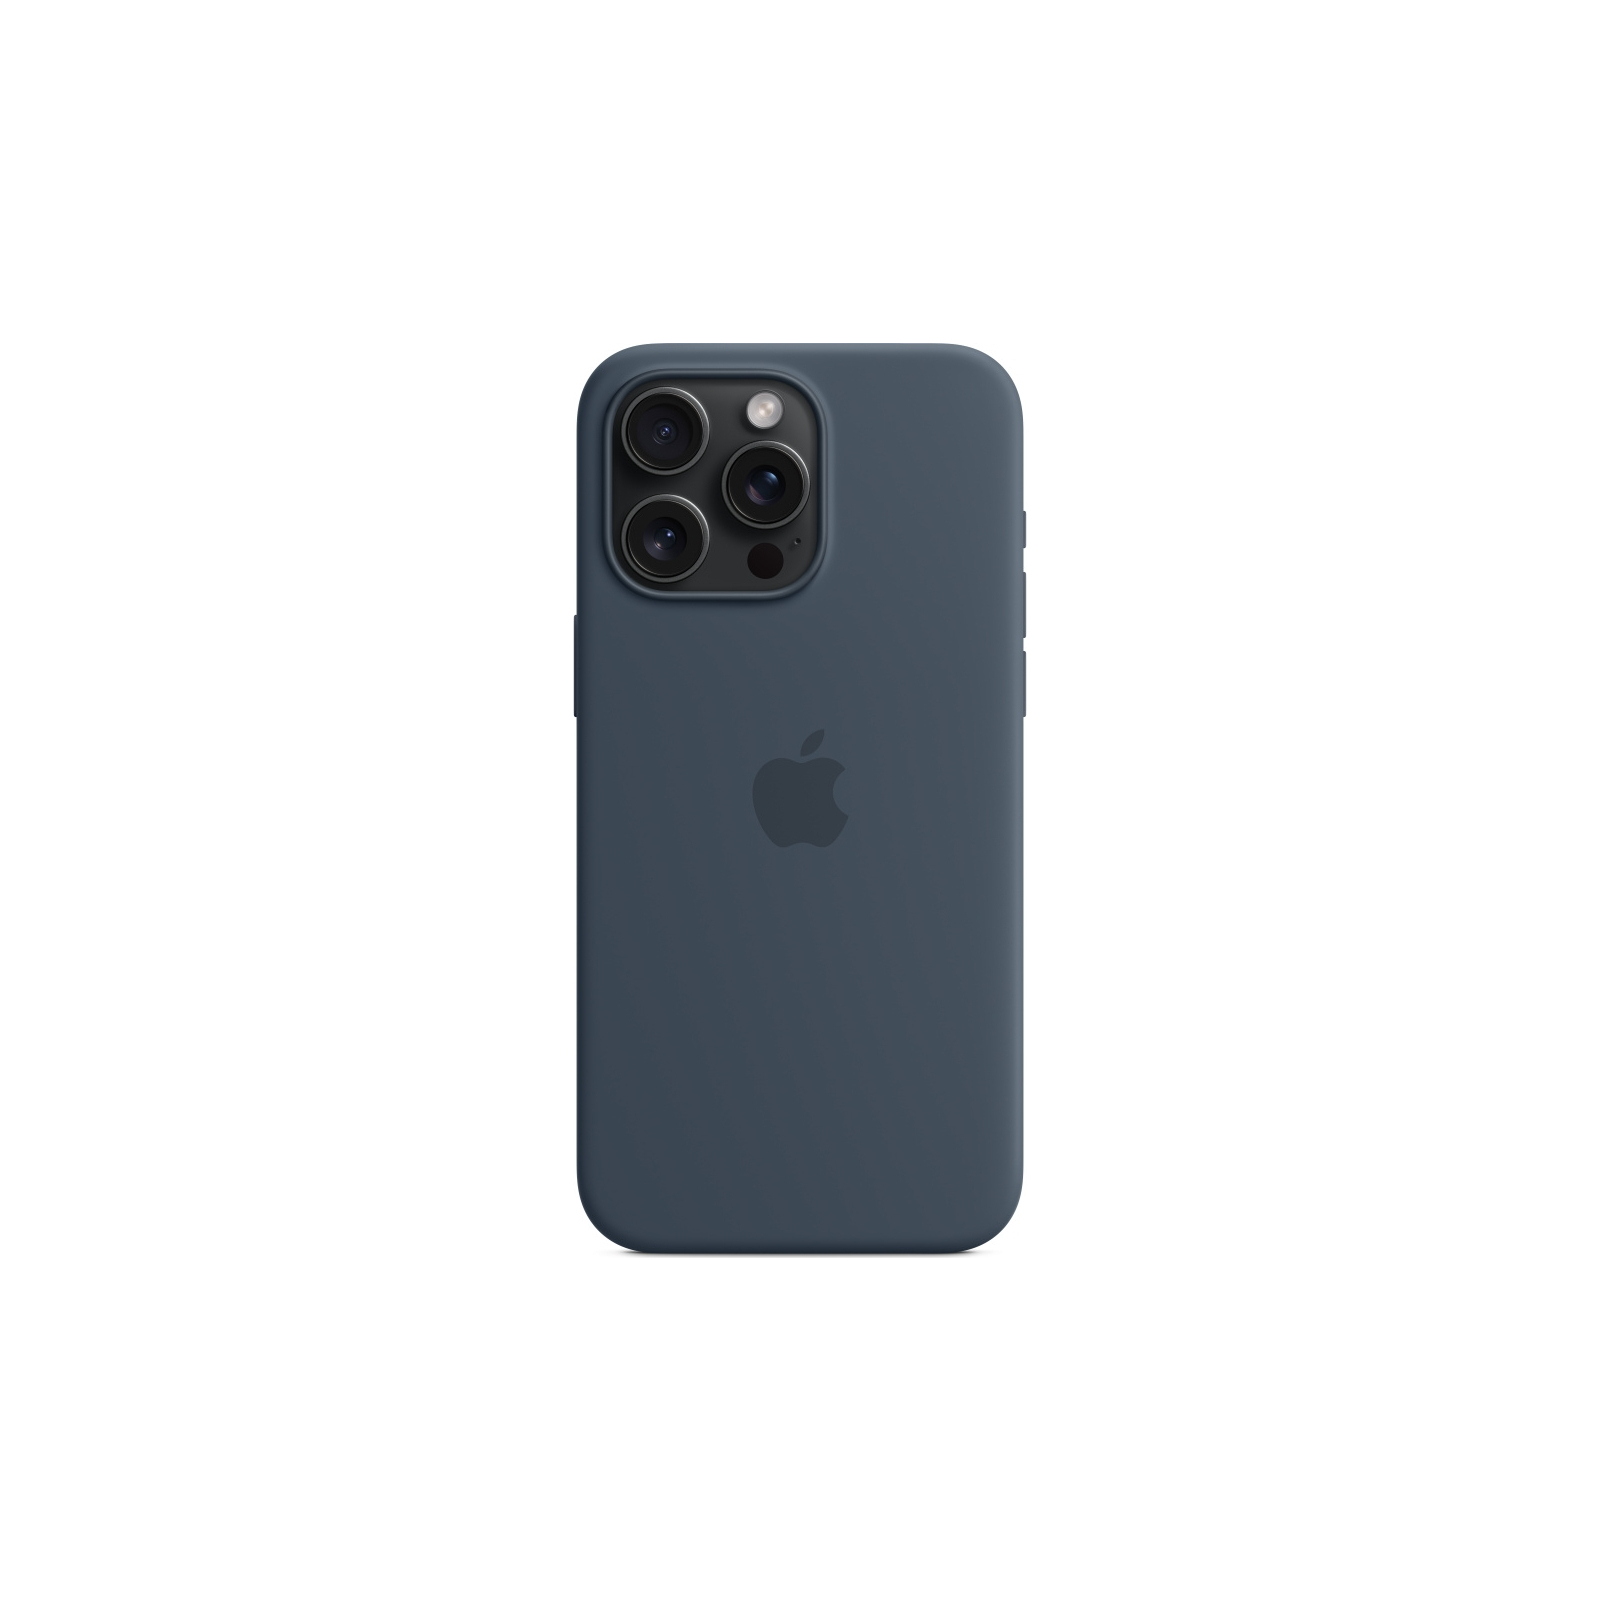 Чехол для мобильного телефона Apple iPhone 15 Pro Max Silicone Case with MagSafe Orange Sorbet (MT1W3ZM/A) изображение 4